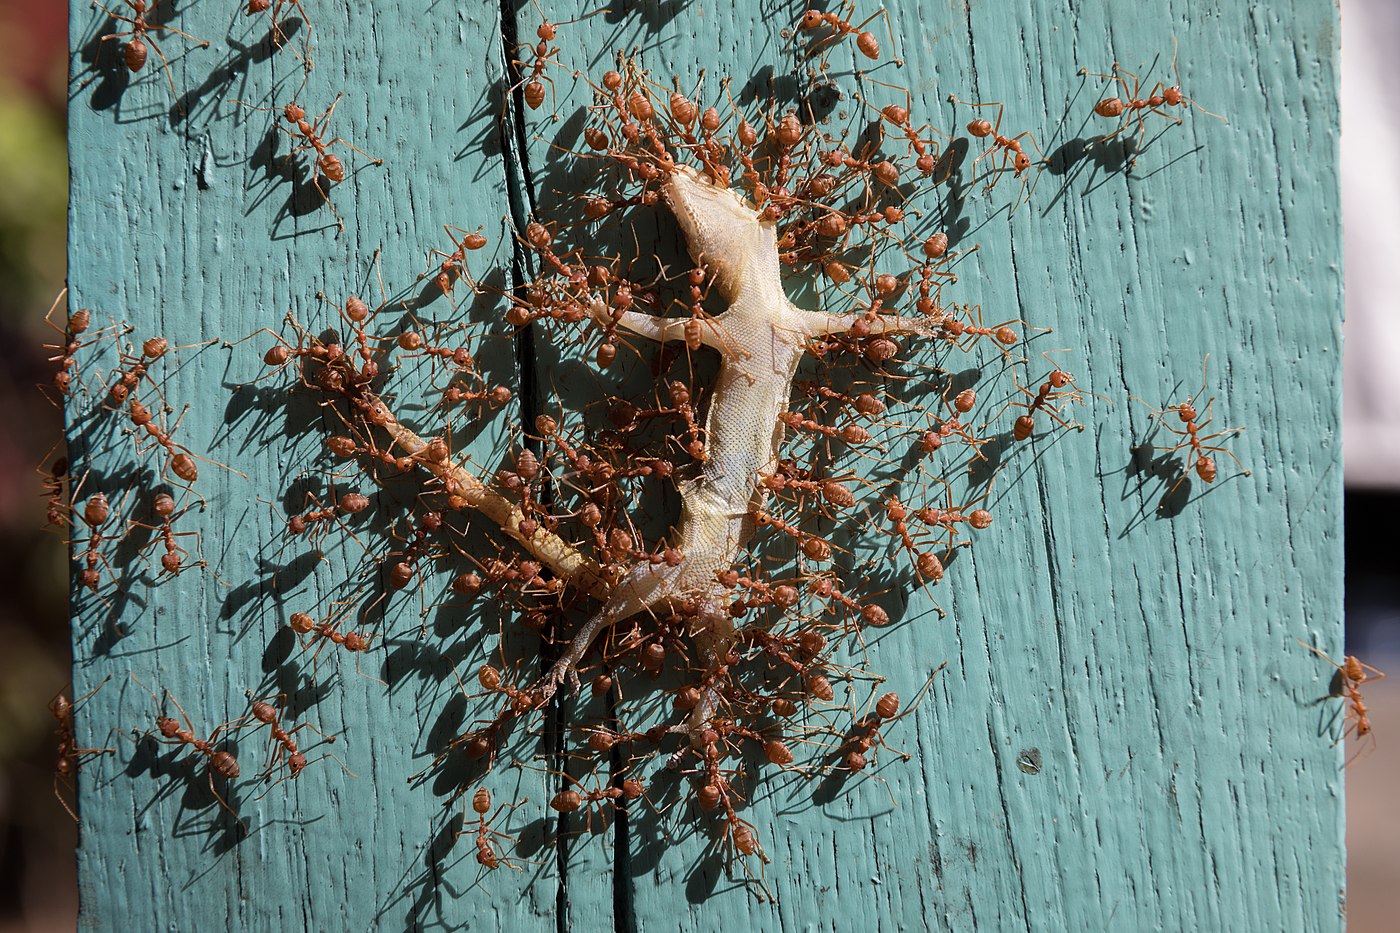  Oecophylla smaragdina (Fourmis rouges) transportant un gecko mort